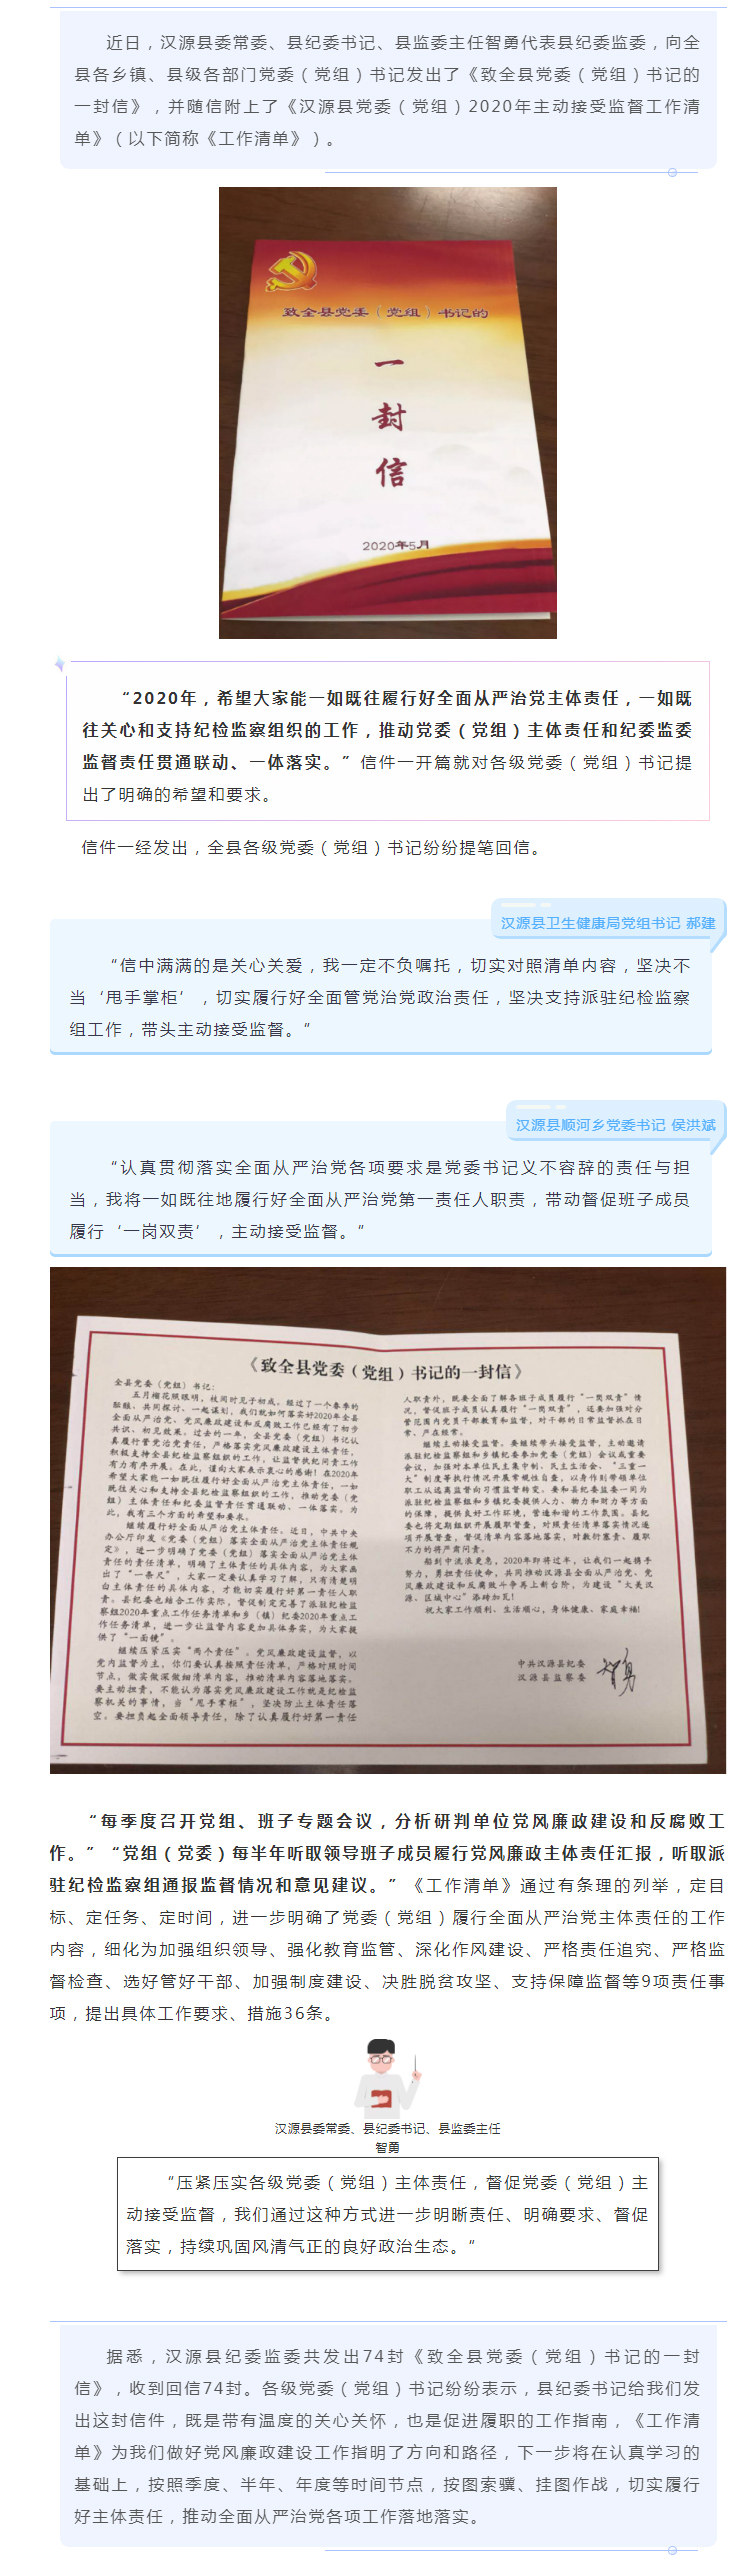 汉源县：致党委（党组）书记的一封信，请查收.jpg